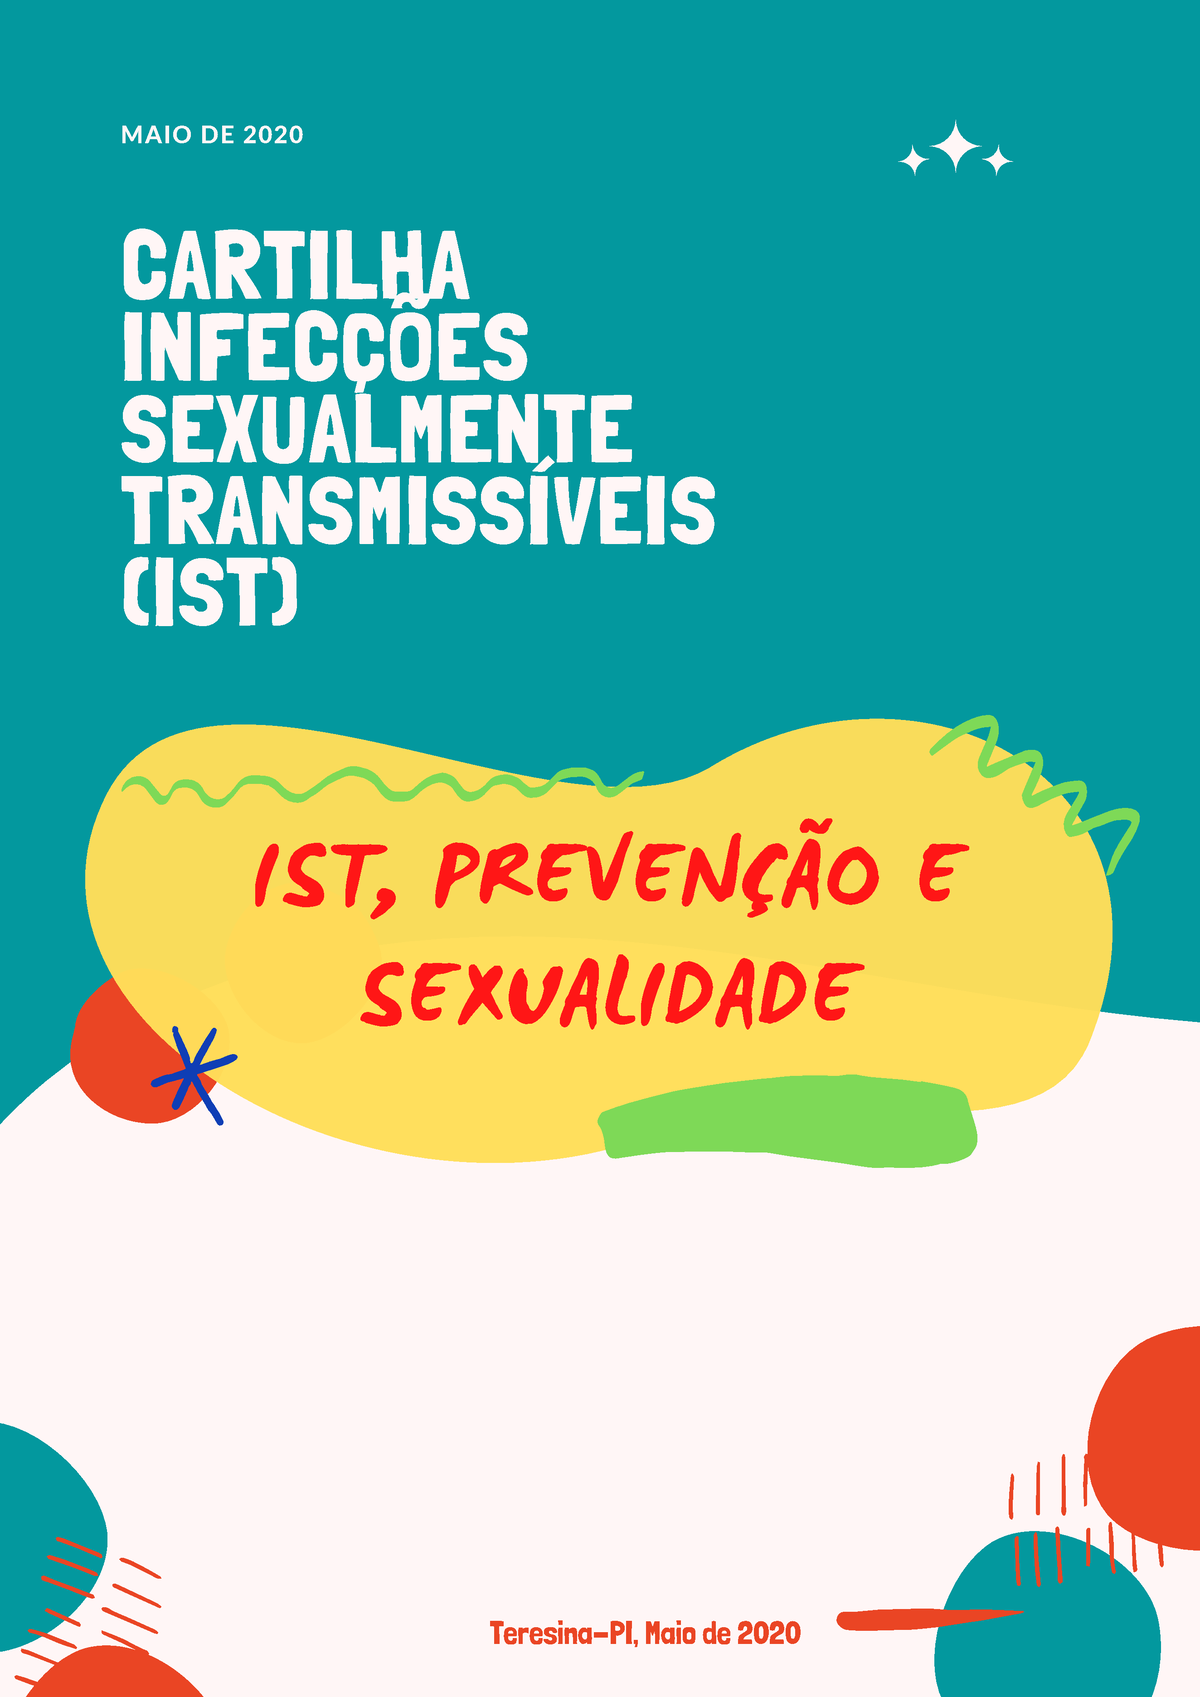 Cartilha Infeccoes Sexualmente Transmissiveis Ist Compressed 202006 10132403 Maio De 2020 0586